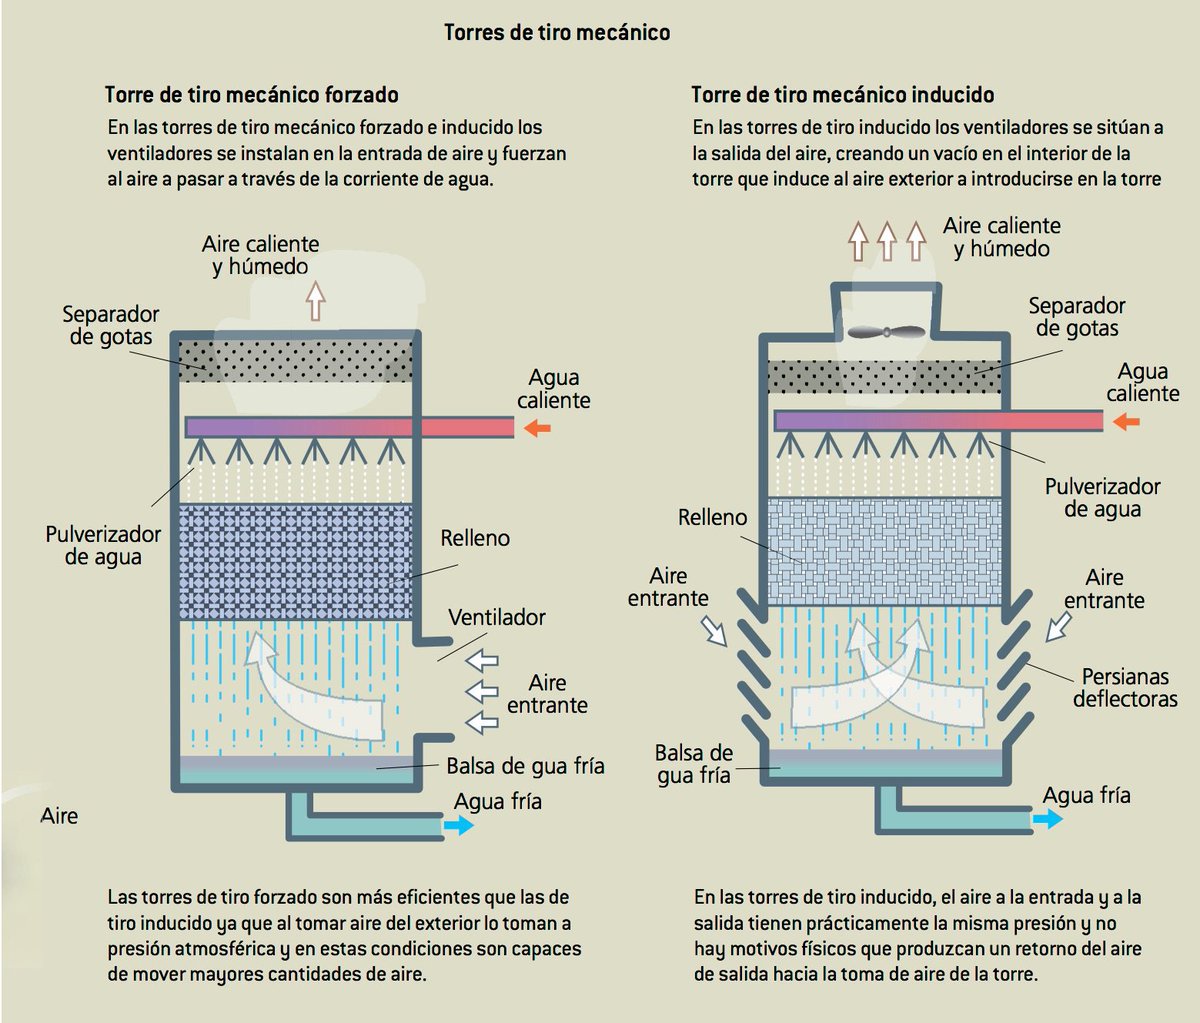  MITO 19: «Las torres de refrigeración emiten gases tóxicos» REALIDAD: Las torres de refrigeración sólo emiten vapor de agua mezclado con agua en forma de aerosol (microgotas), que no ha entrado en contacto con ninguna sustancia radiactiva ni tóxica.